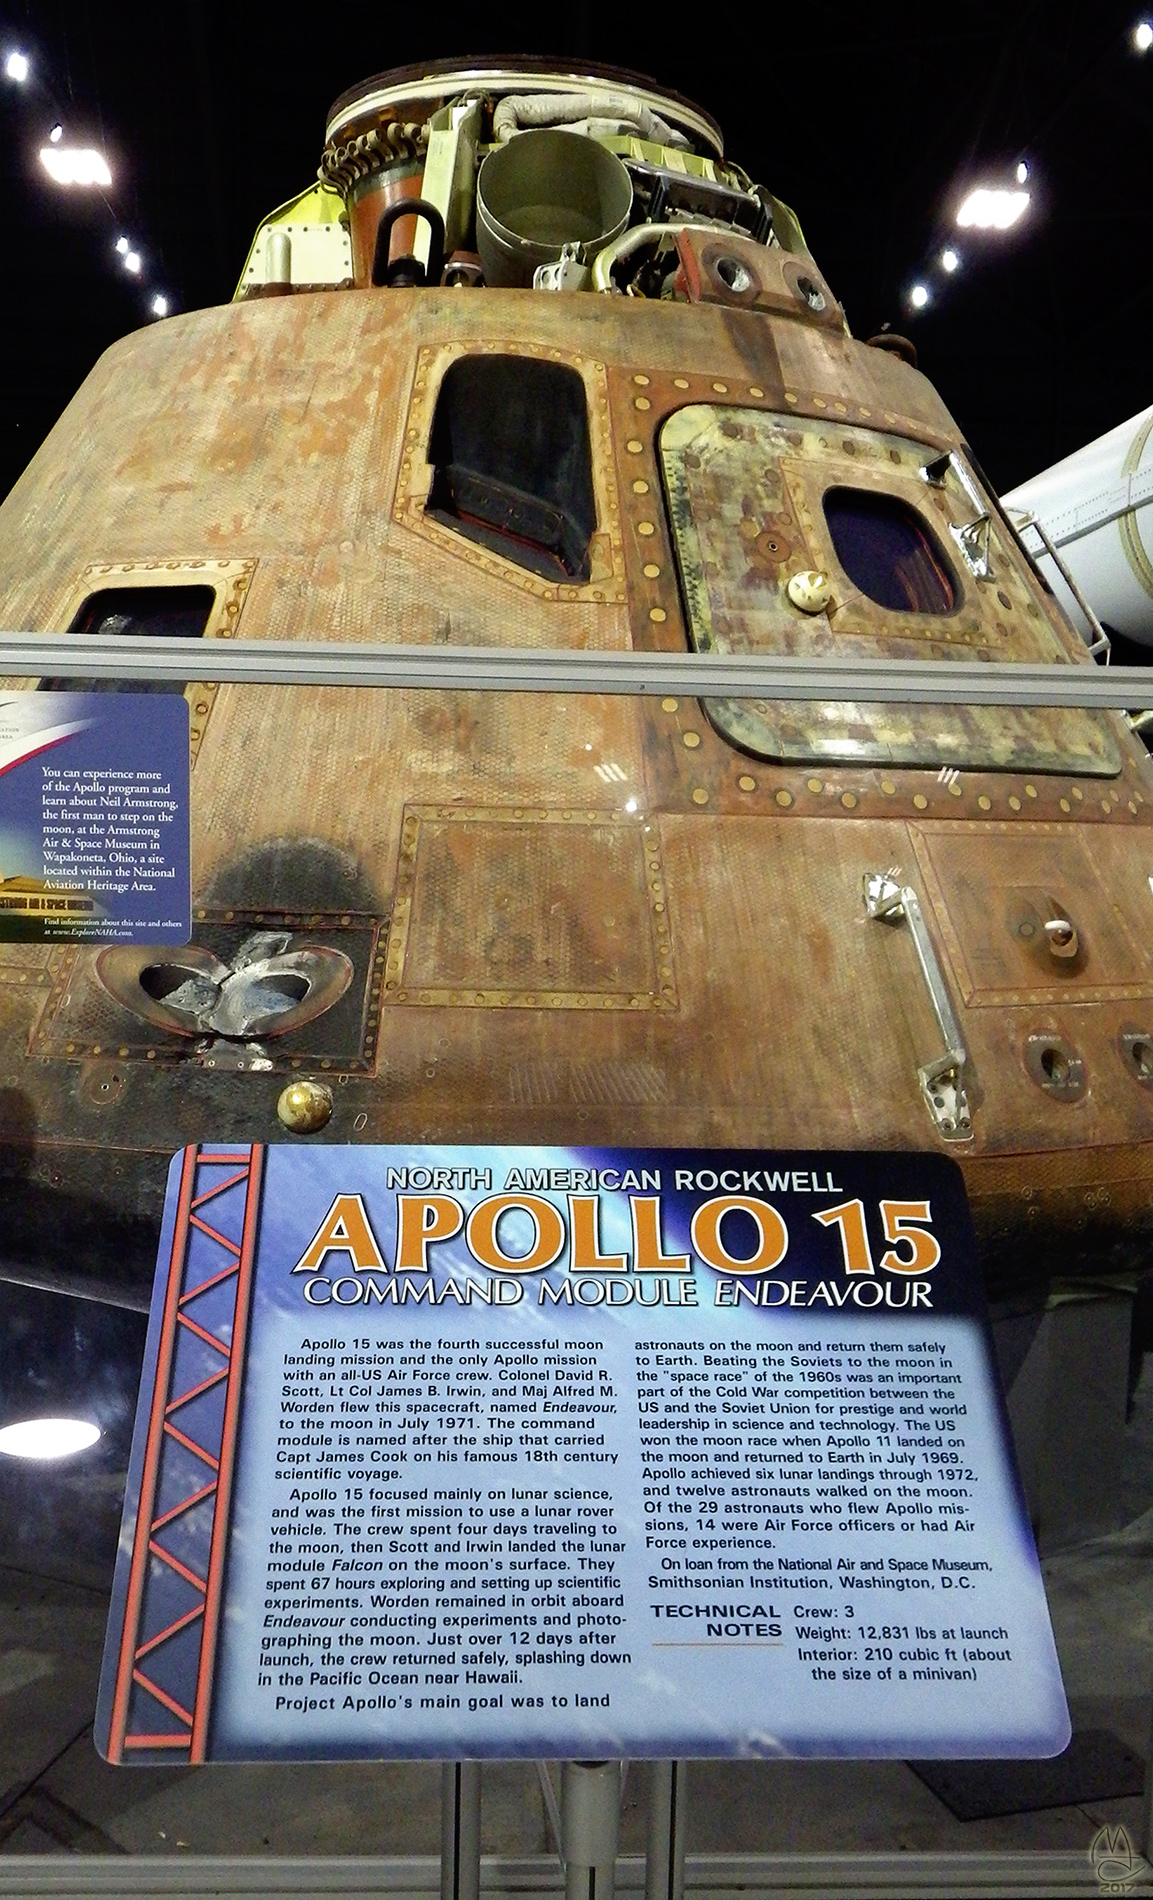 Apollo 15 Command Module 'Endeavour'